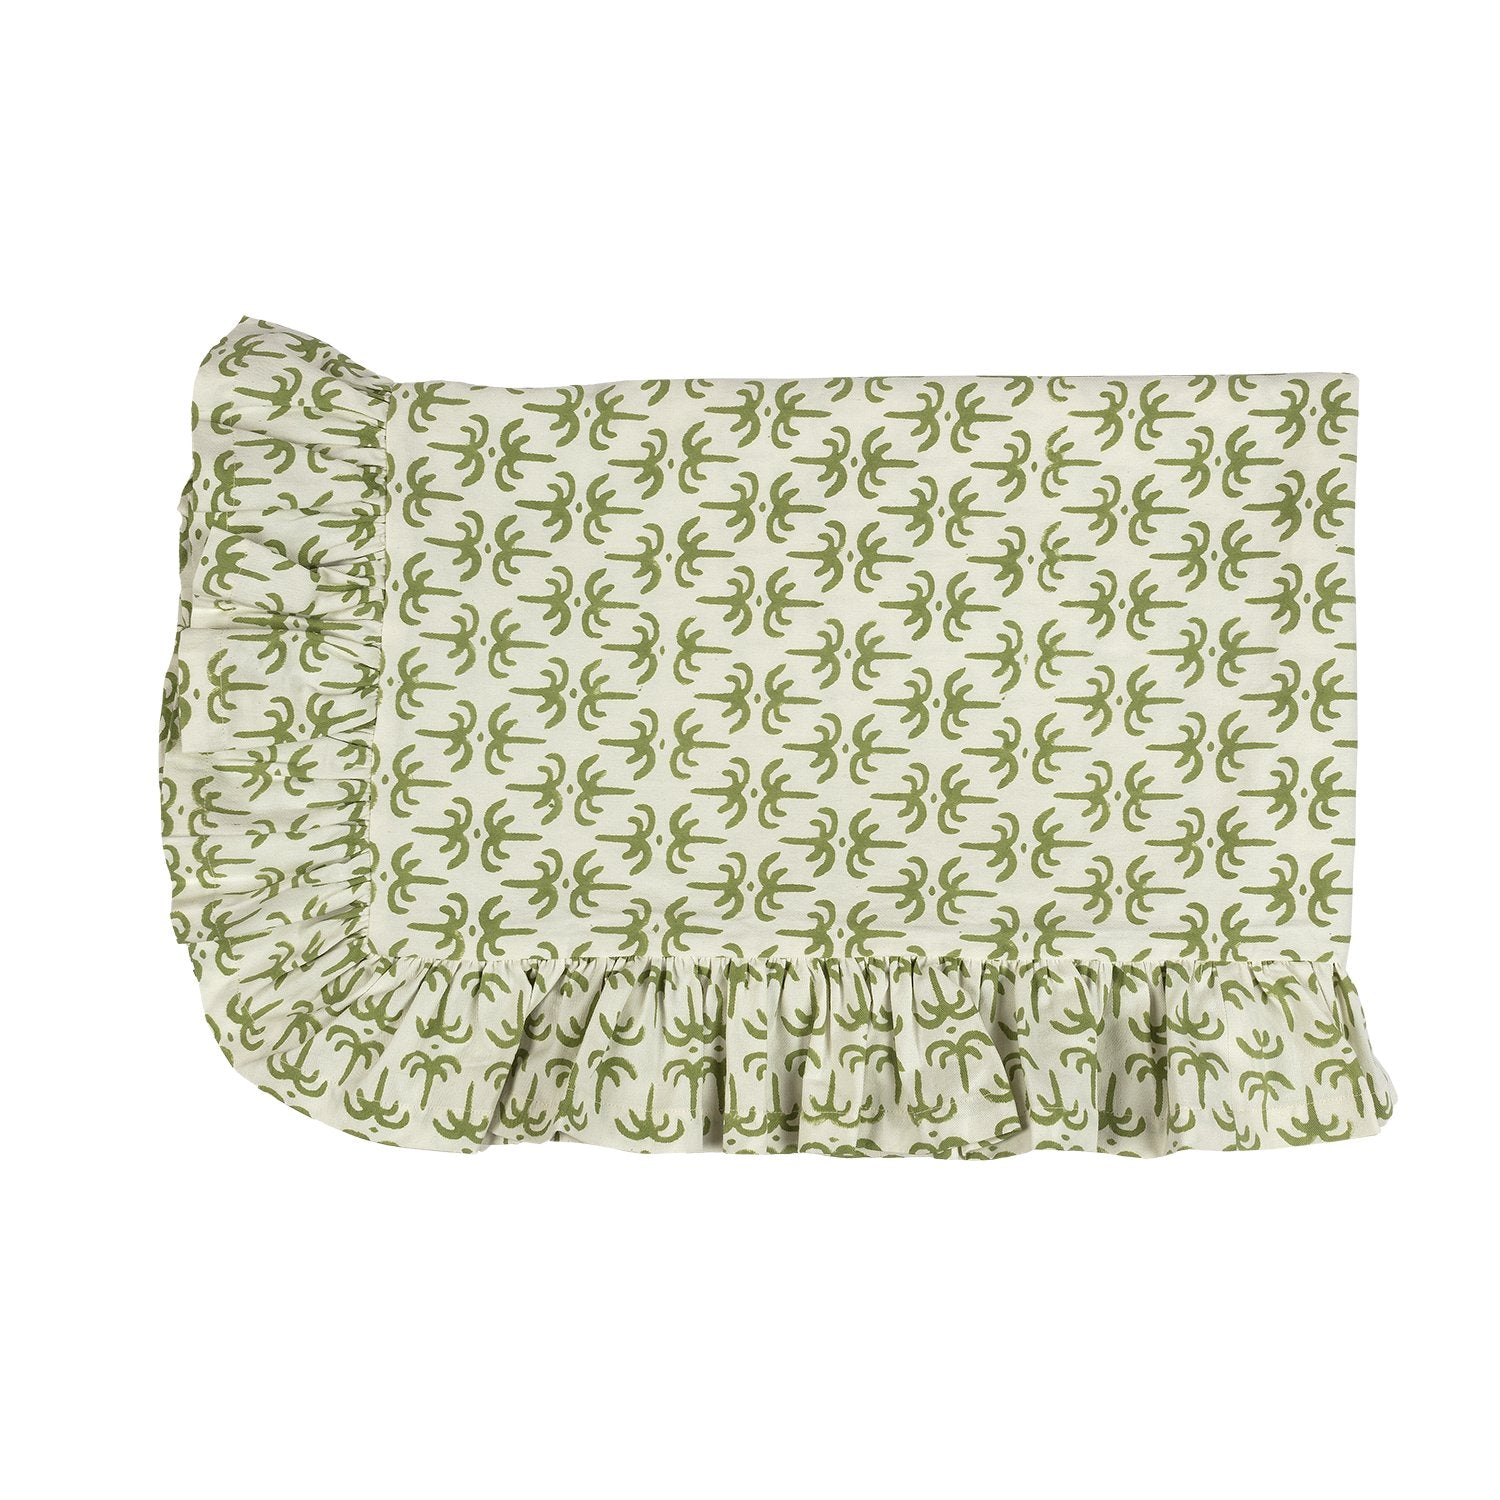 Green Callaloo Cotton Ruffle Tablecloth - Alice Palmer & Co